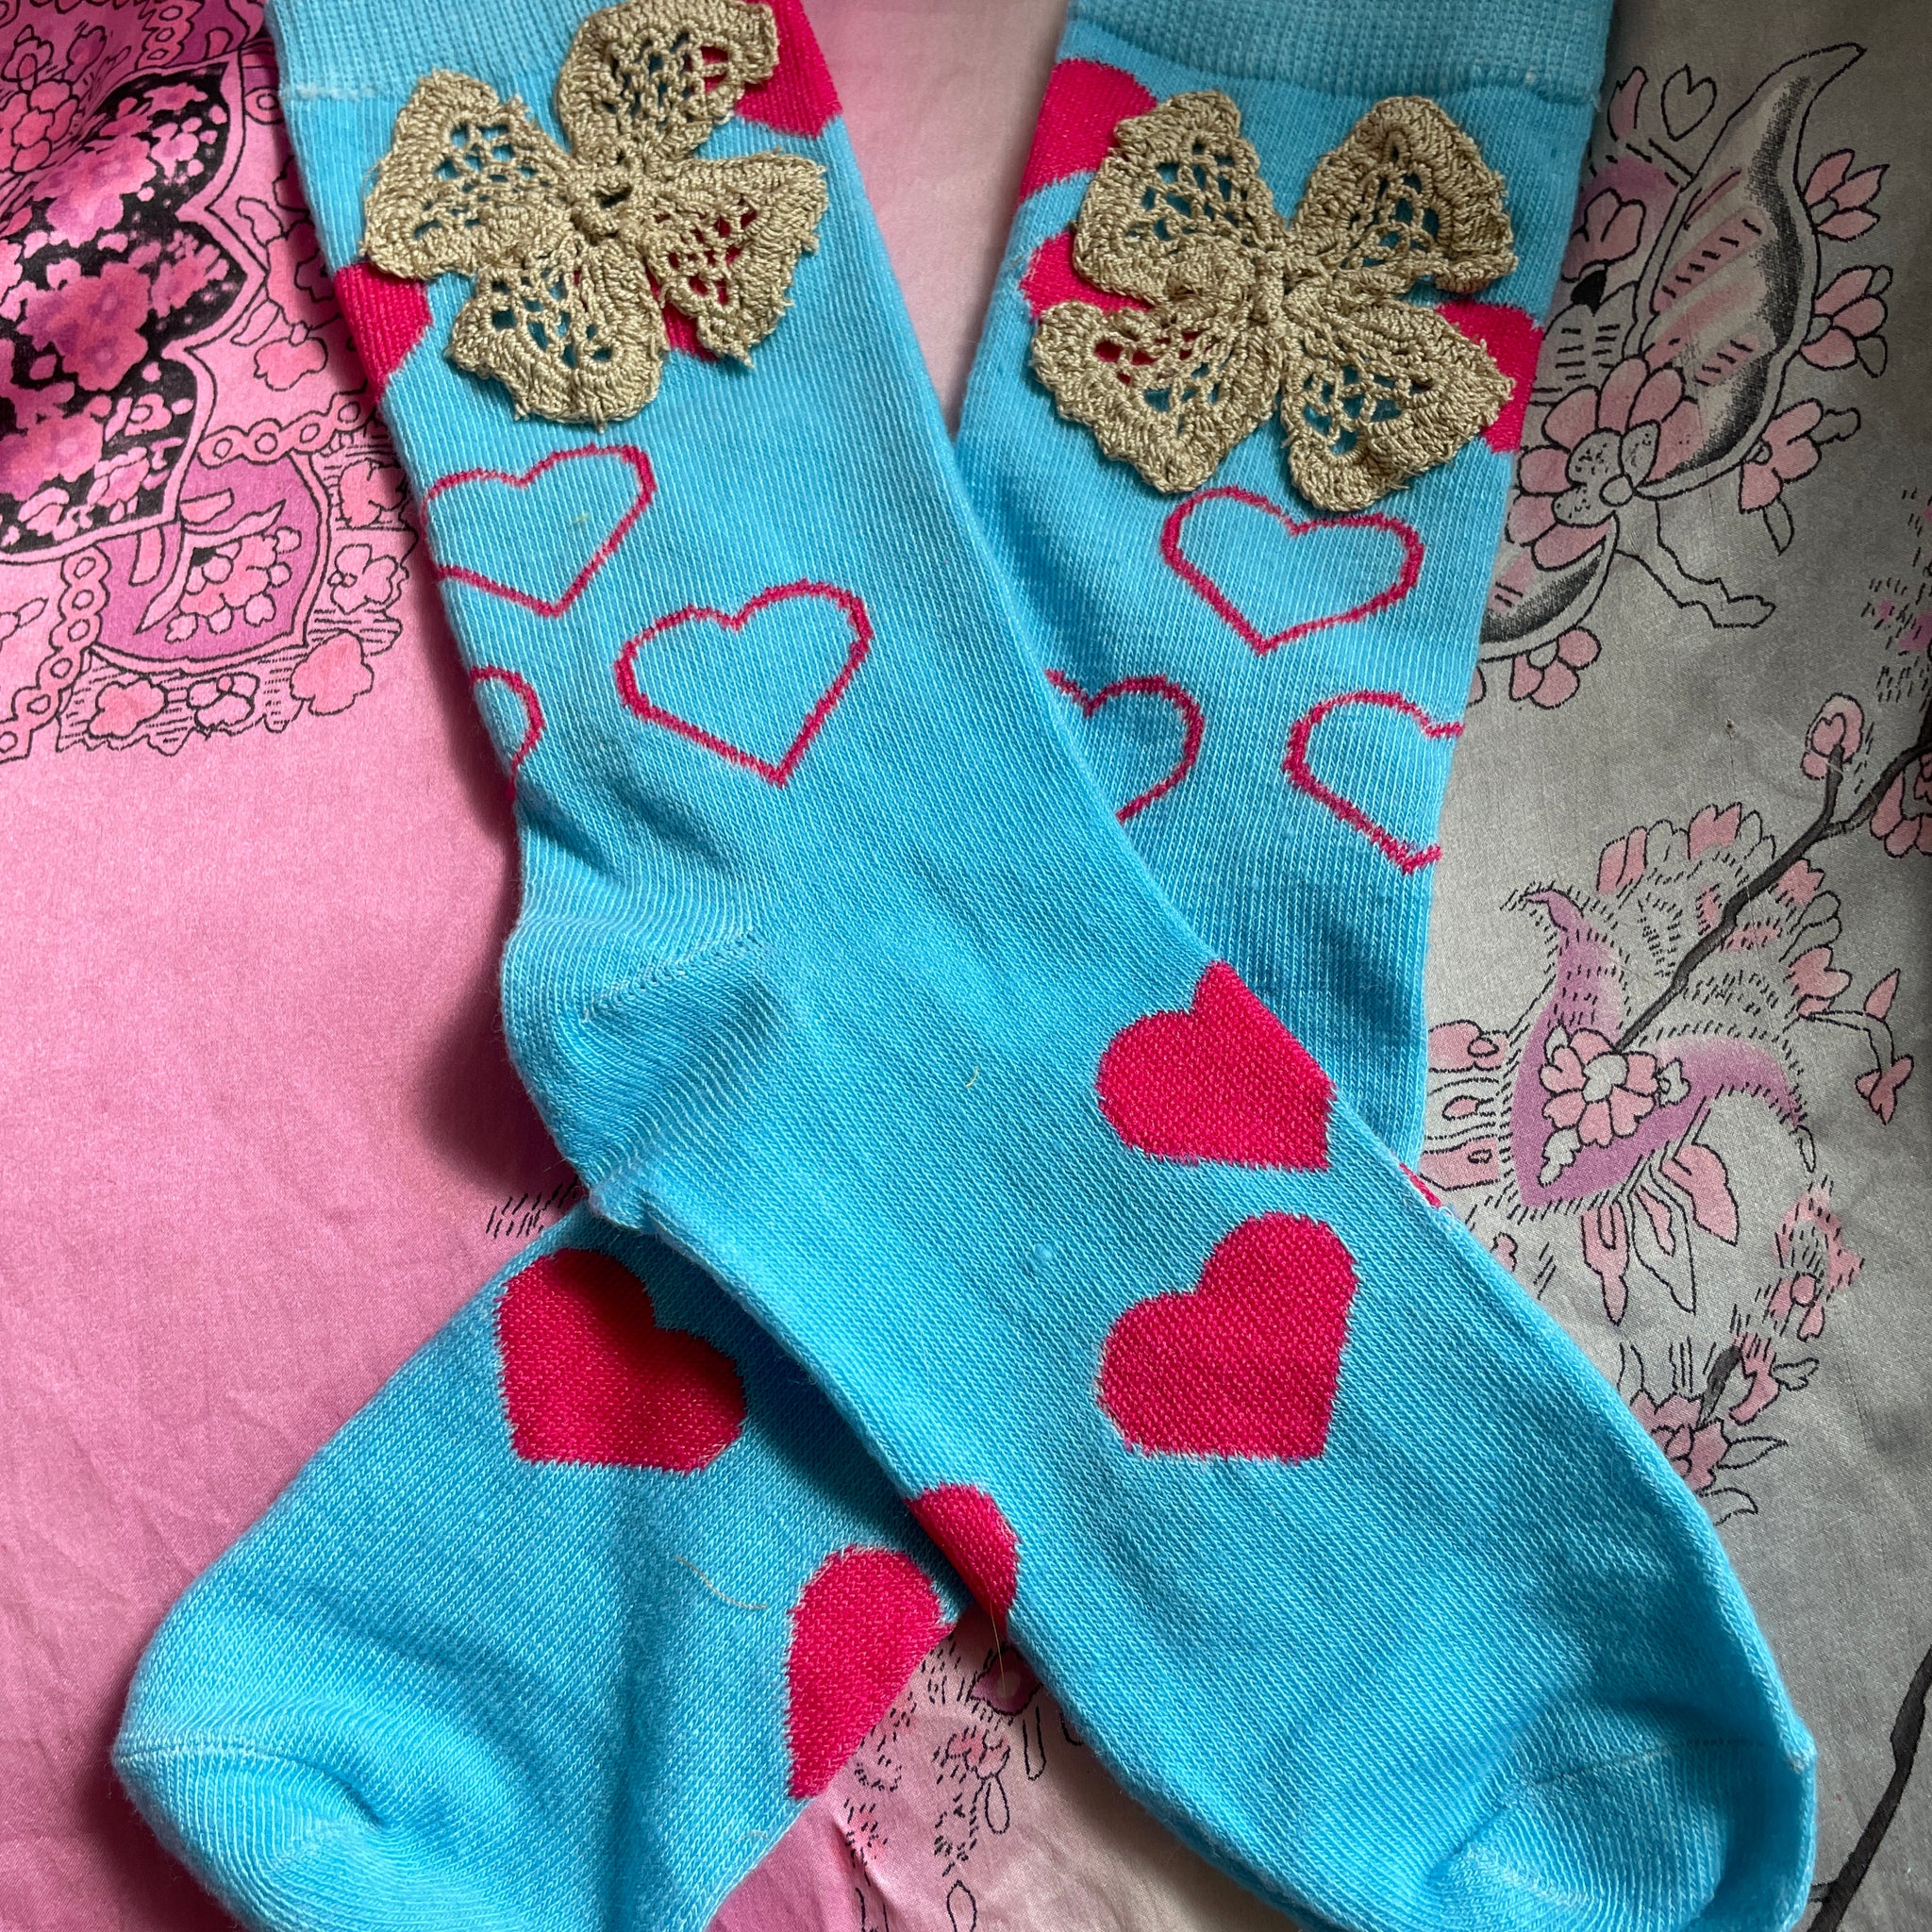 Blue heart socks